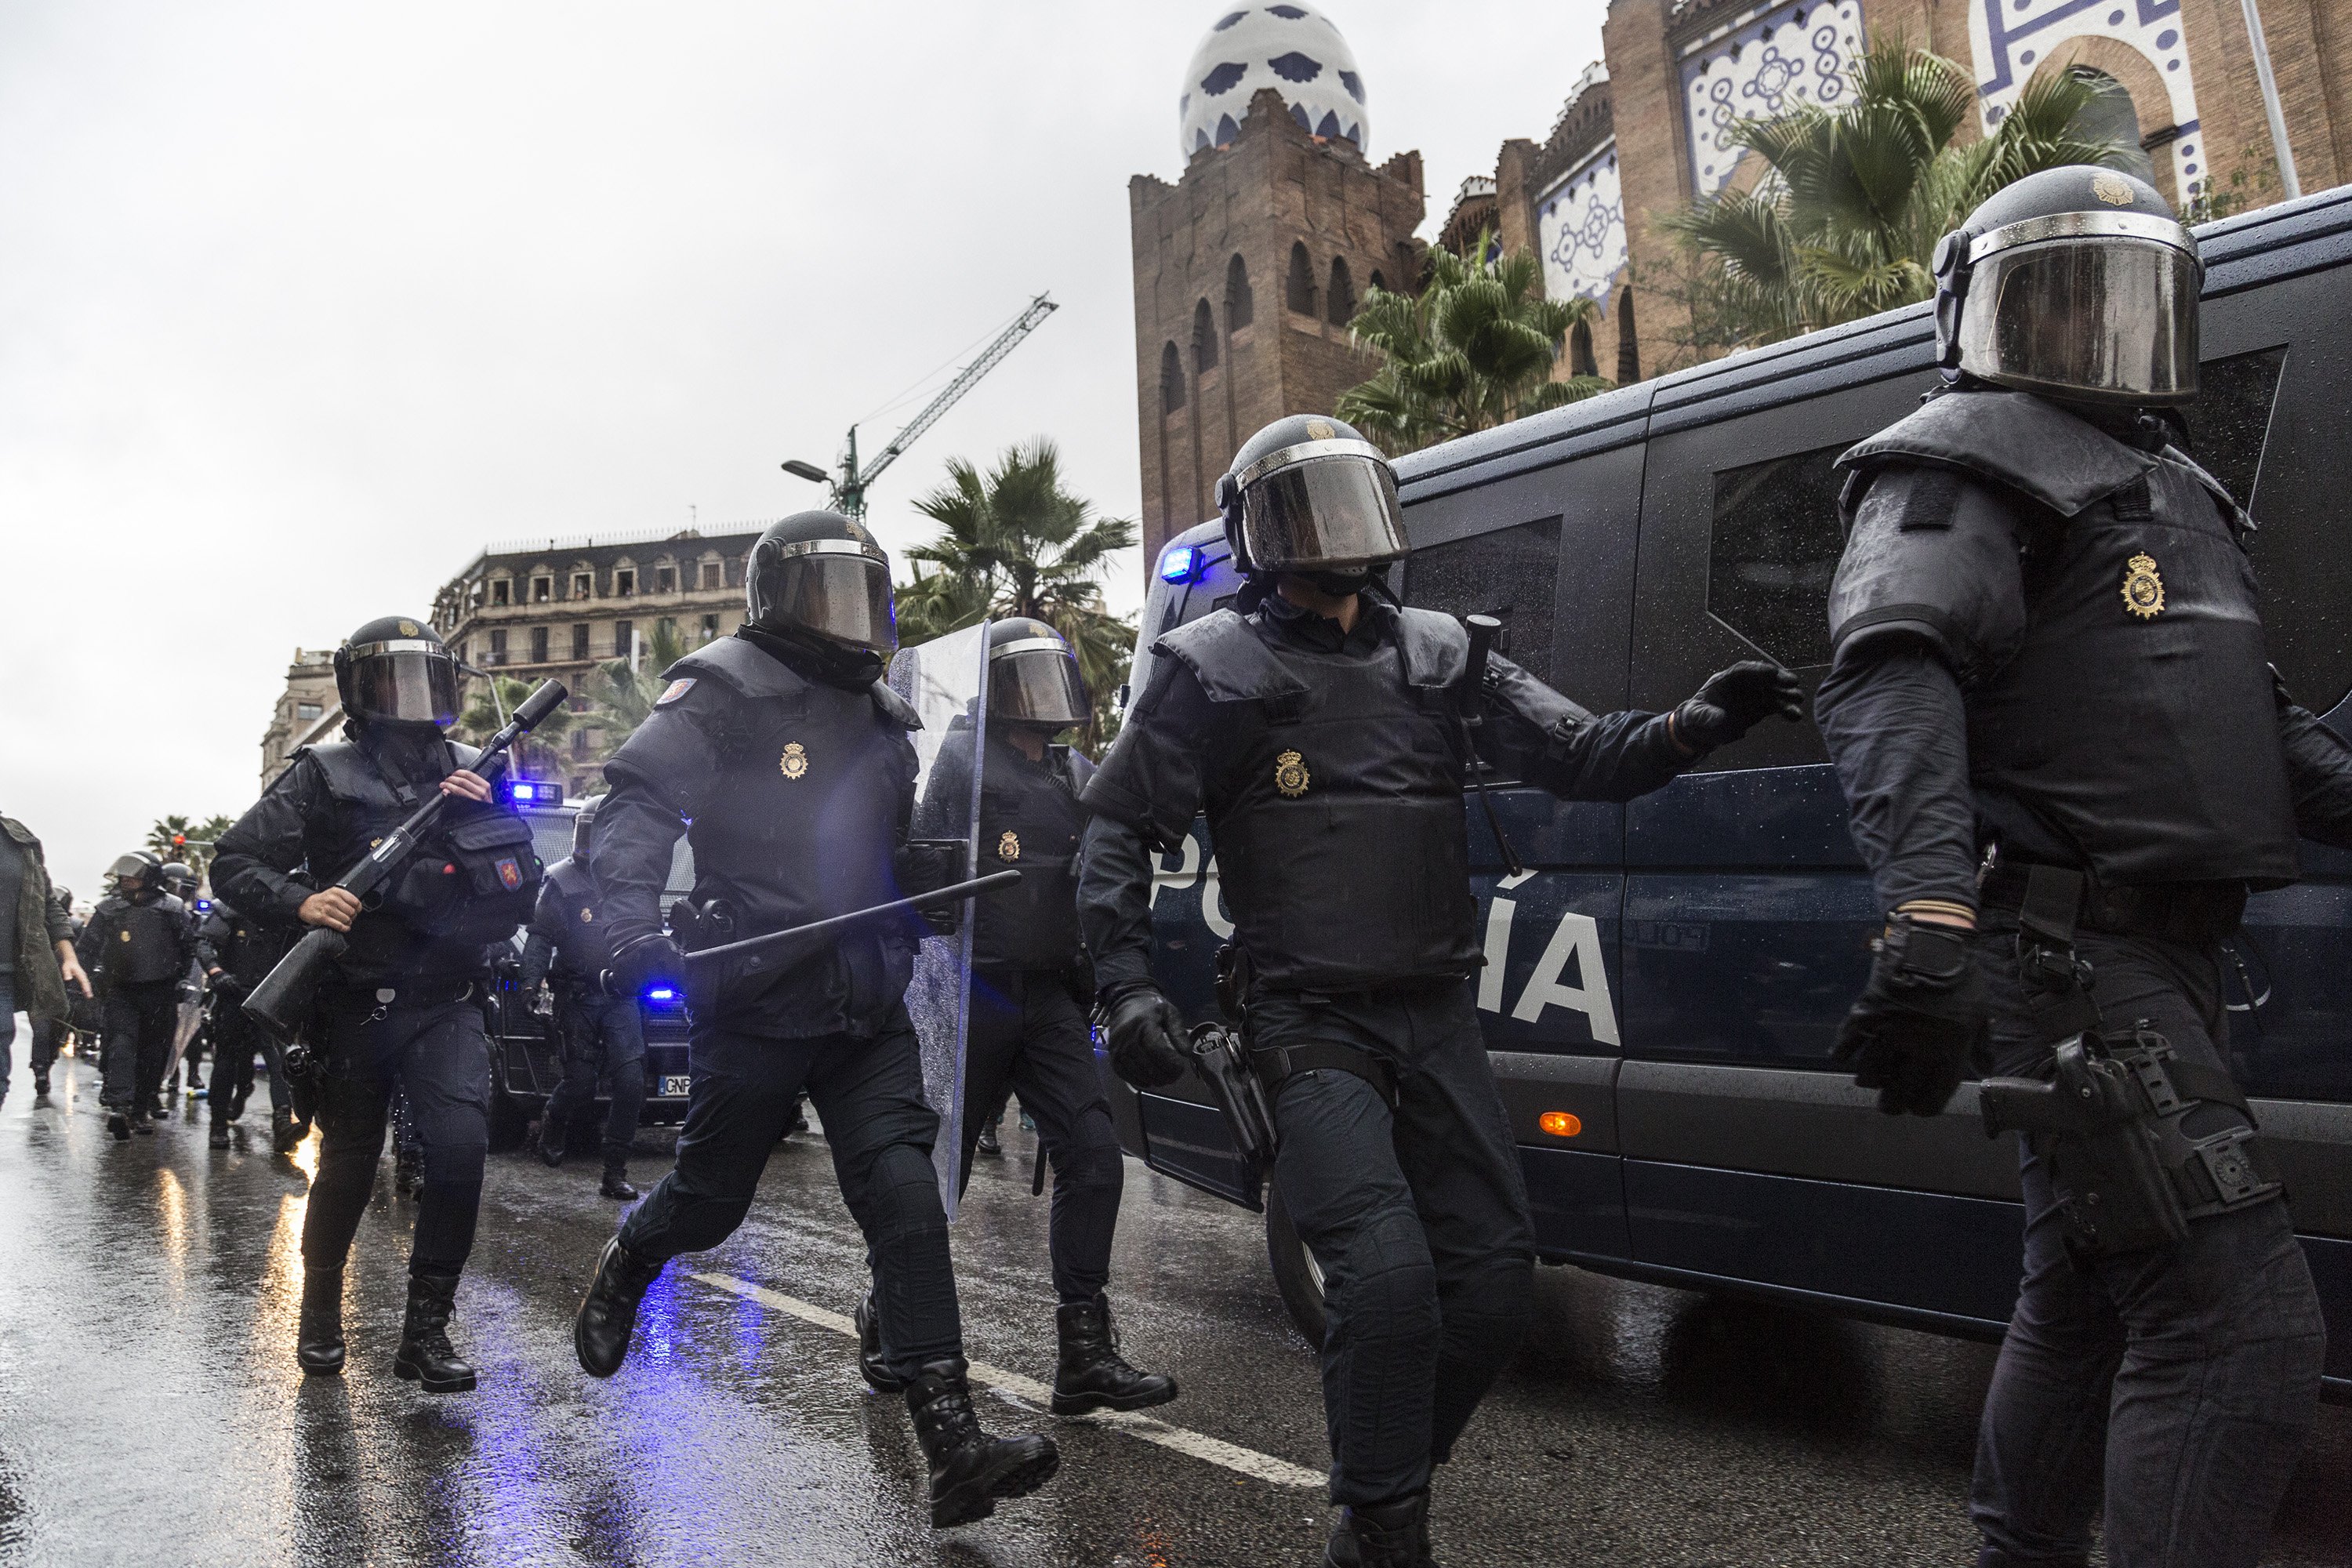 El govern espanyol enviarà 400 antiavalots a Catalunya per blindar el Consell de Ministres el 21-D